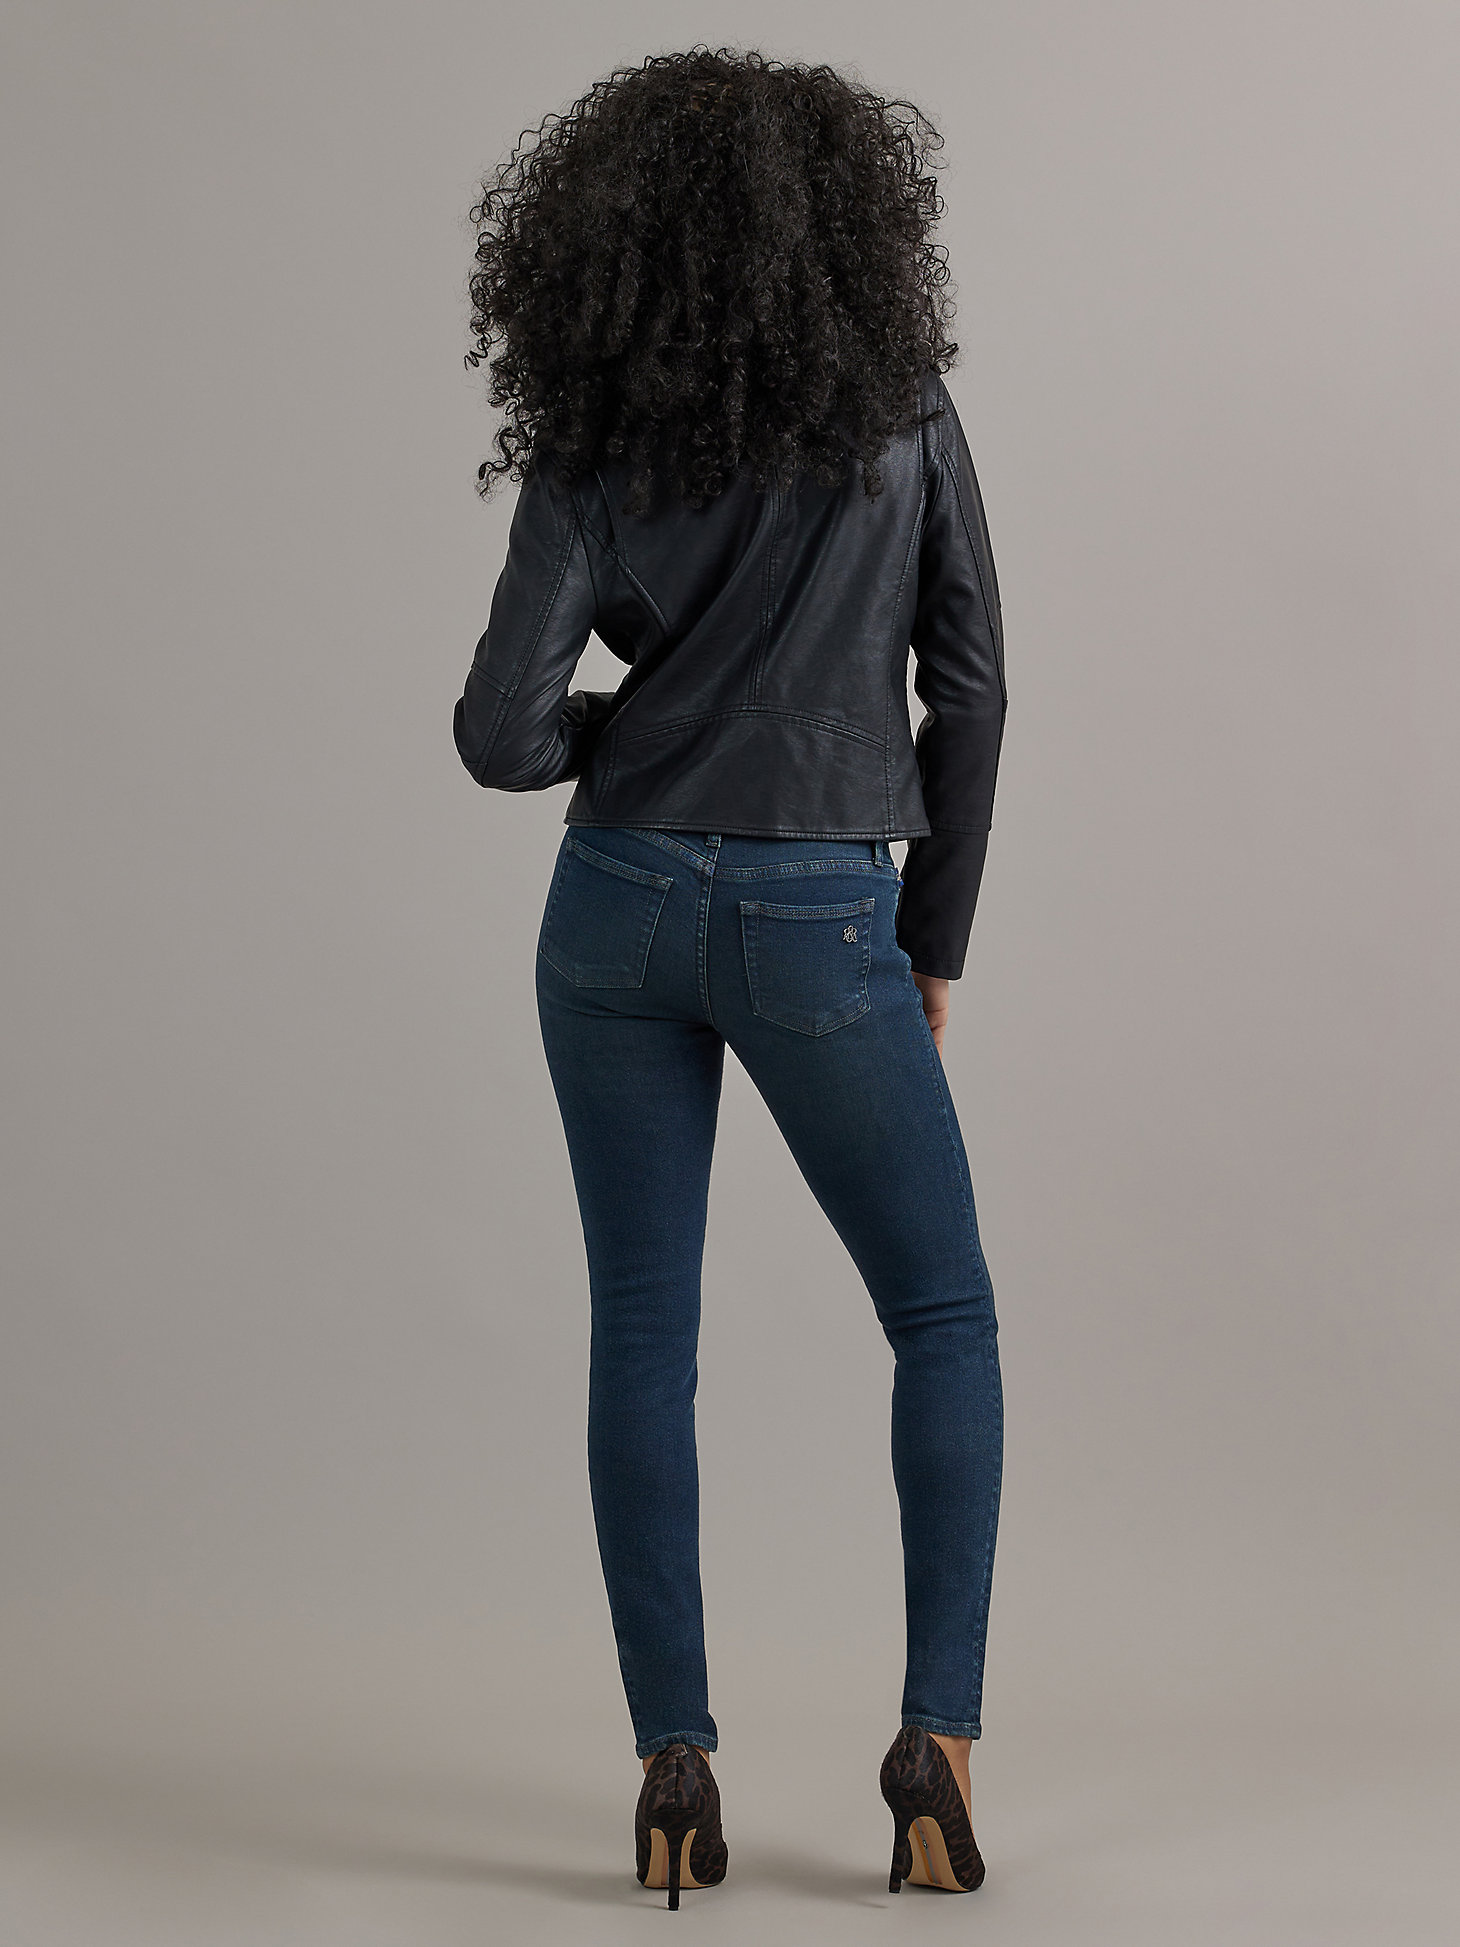 Women's Berlin Skinny Jean in Attraction alternative view 1